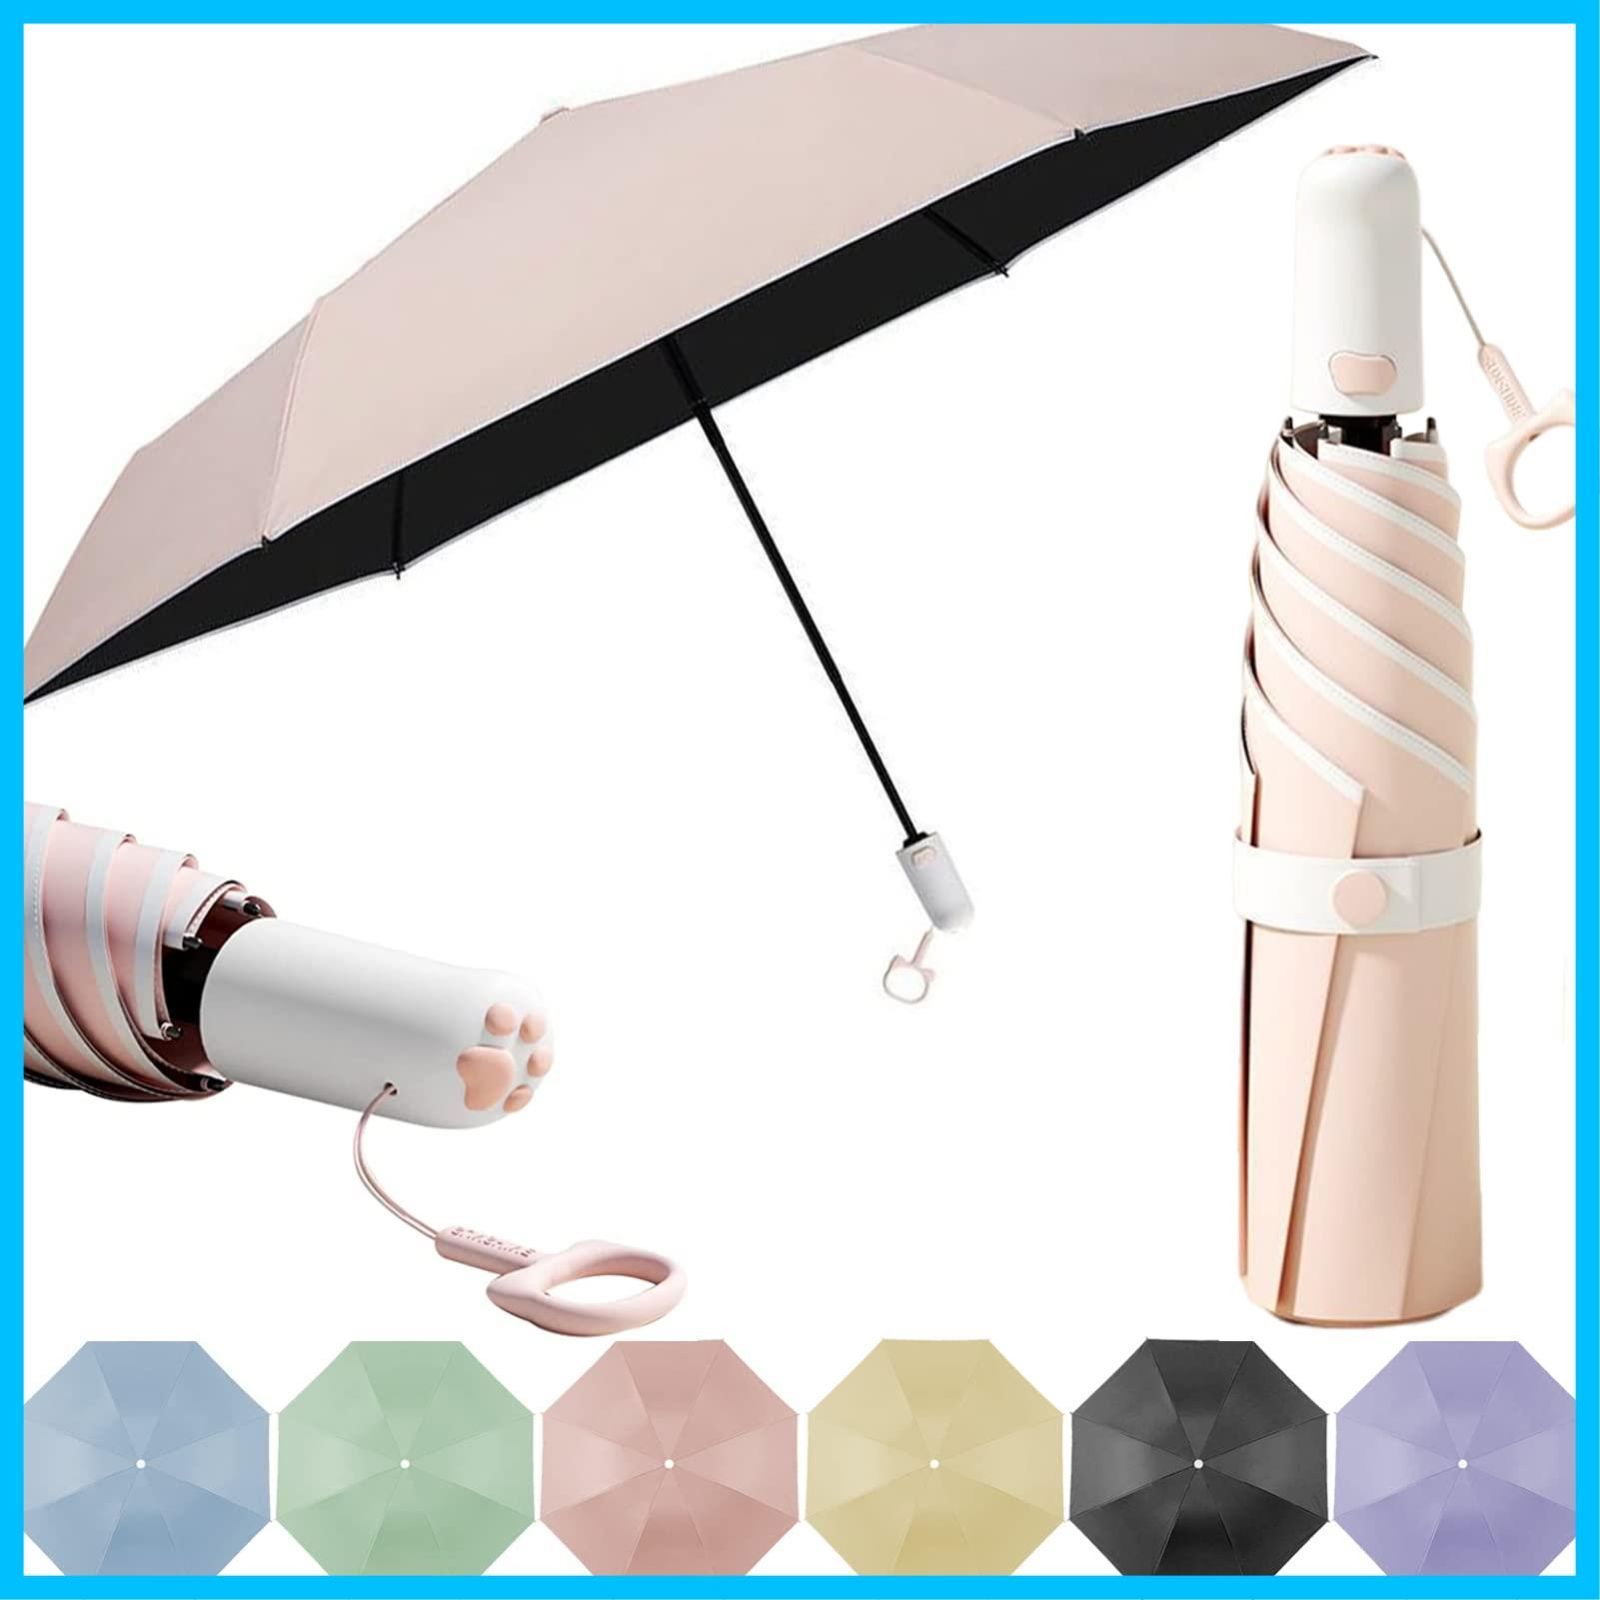 【色:イエロー】Formemory 猫の肉球傘 日傘 折りたたみ傘 カラー 6色